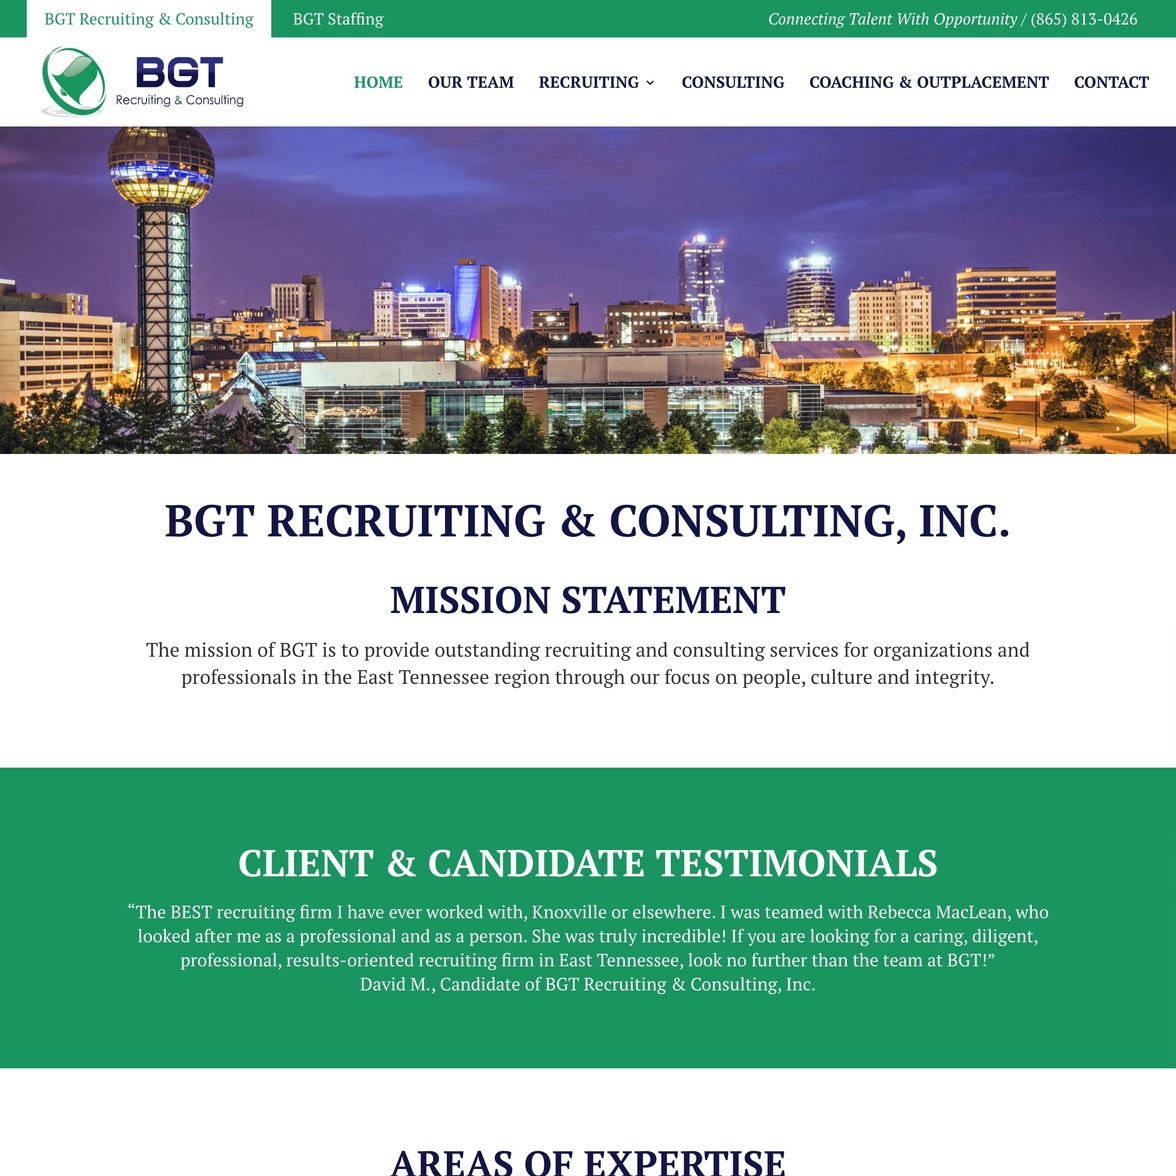 BGT Recruiting & Consulting, Inc